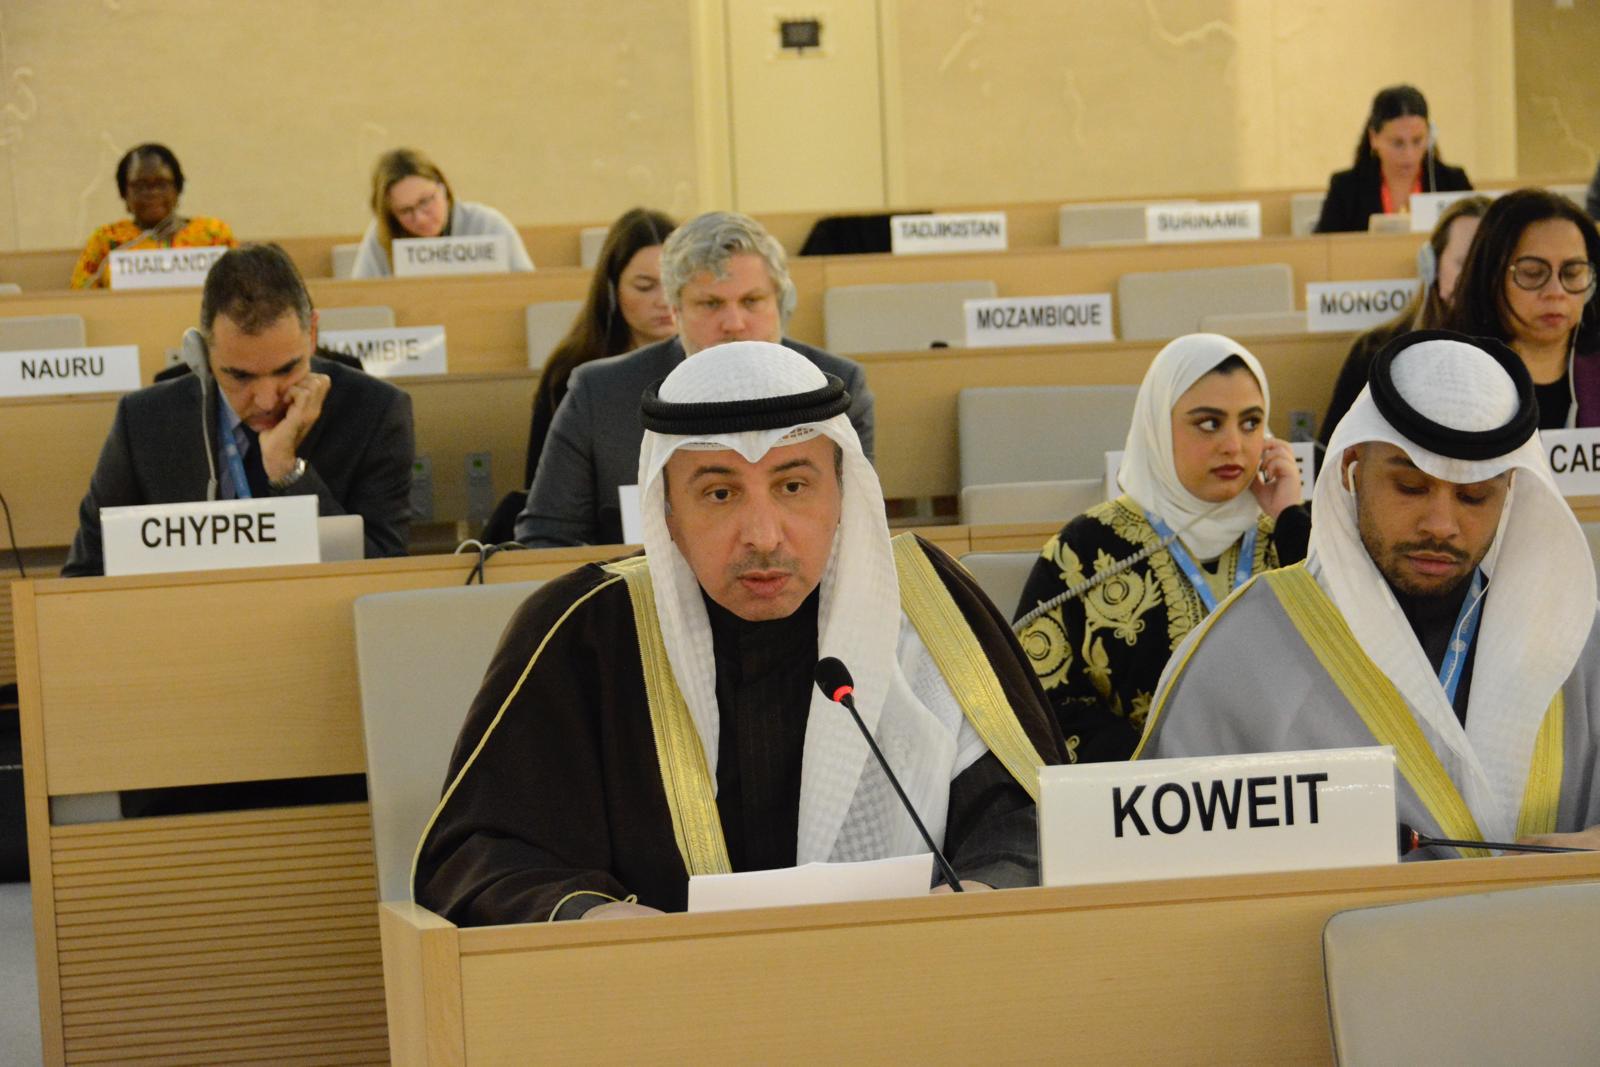 المندوب الدائم لدولة الكويت لدى الأمم المتحدة والمنظمات الدولية الأخرى بجنيف السفير ناصر الهين يلقي كلمته خلال اجتماع مجلس الأمم المتحدة لحقوق الإنسان (كونا)